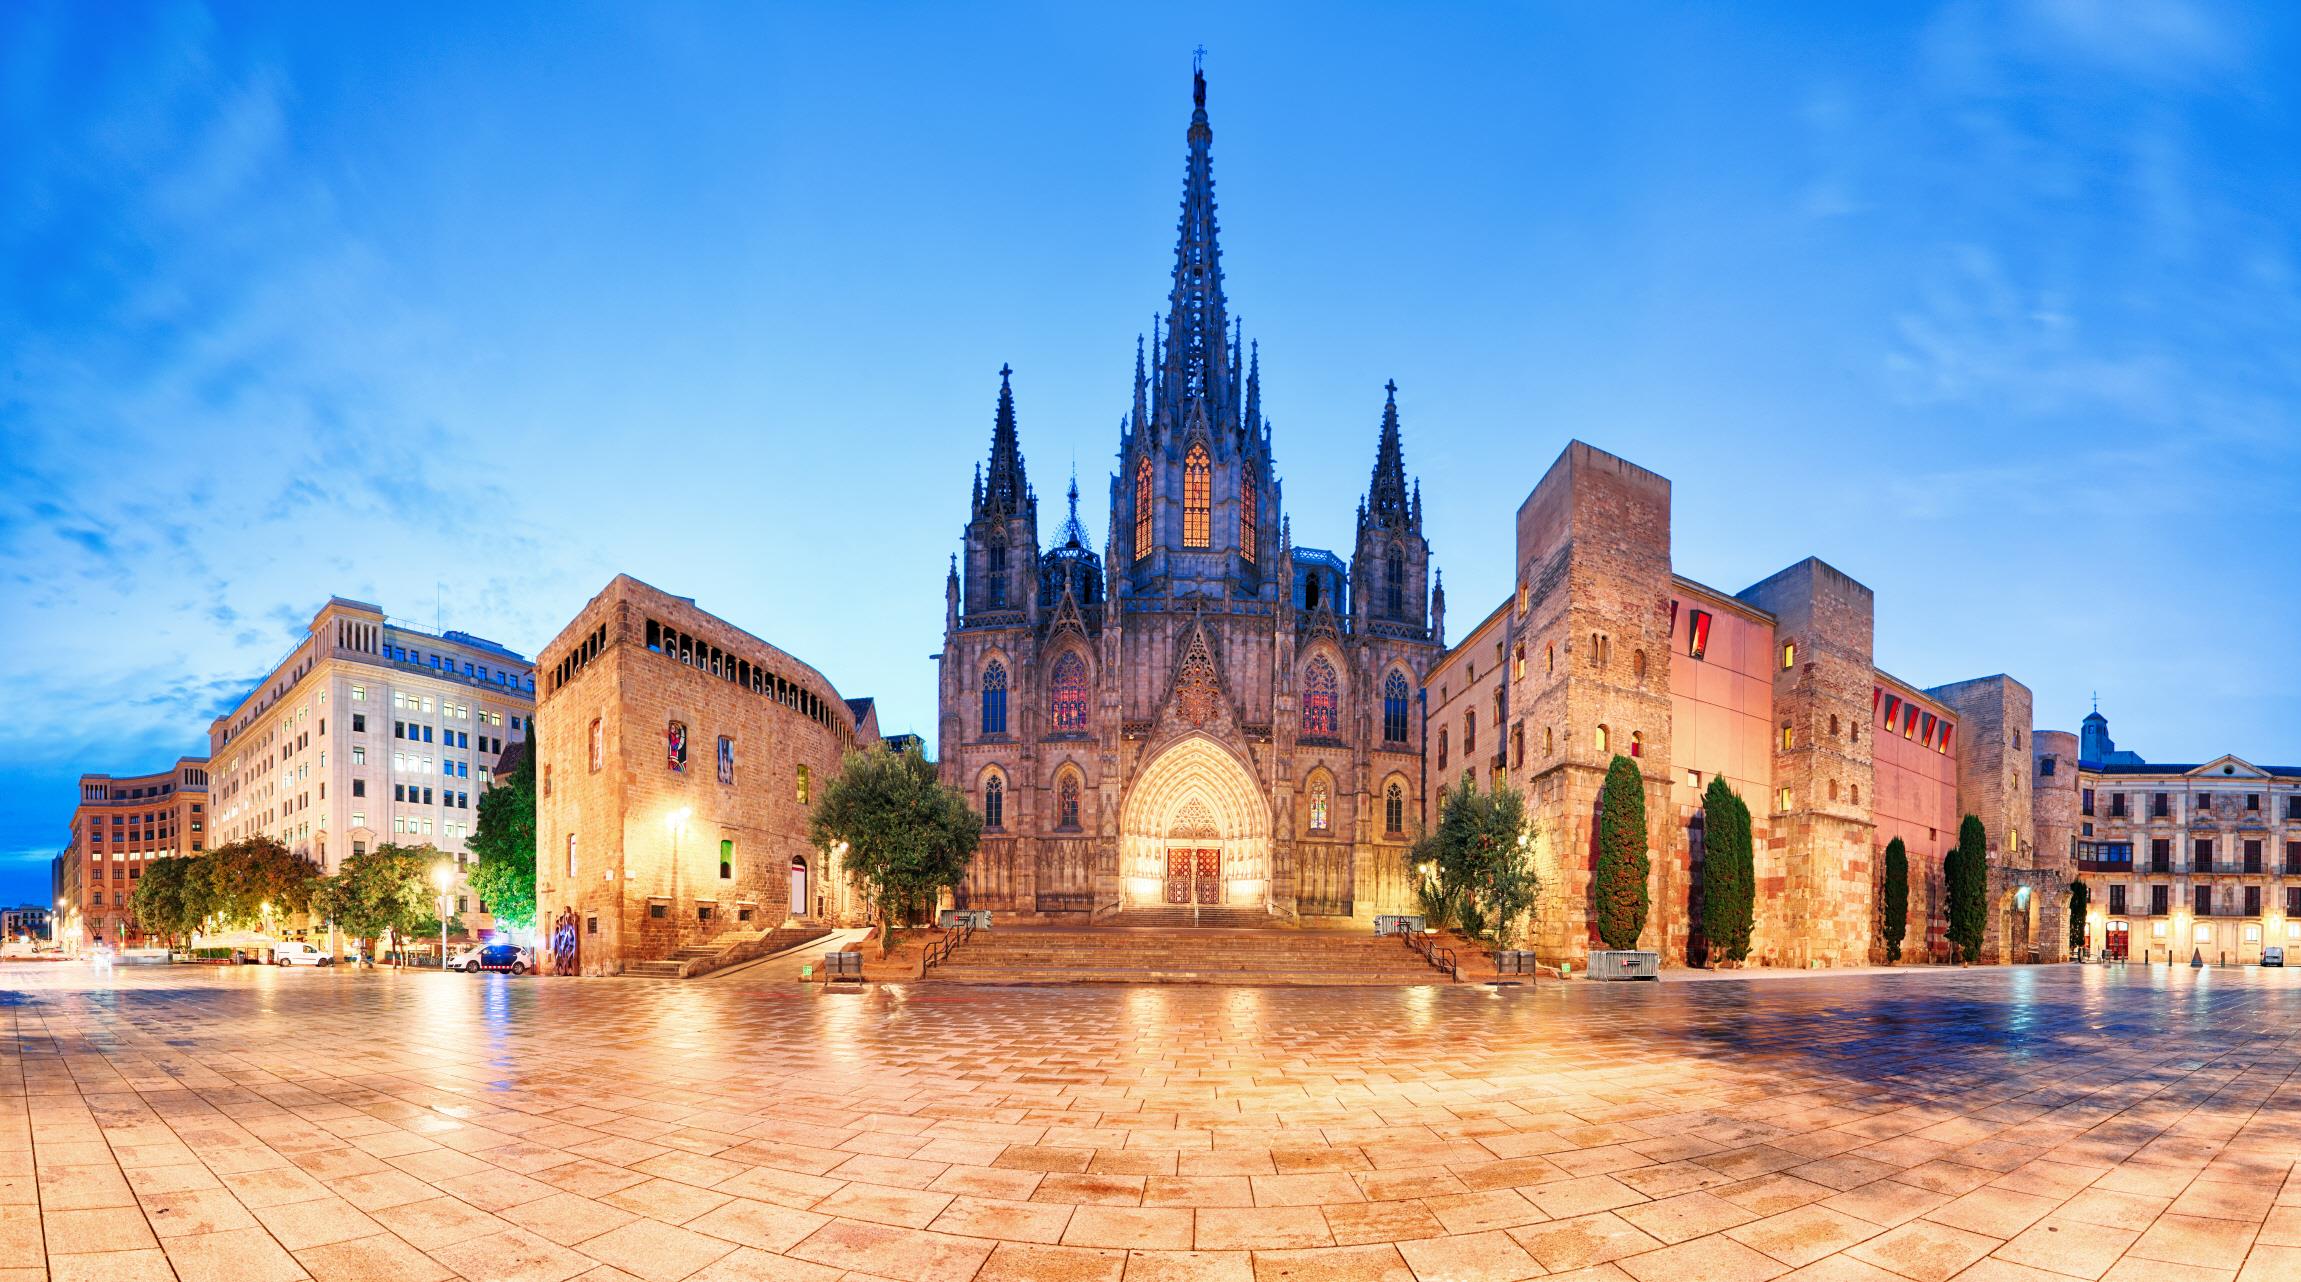 바르셀로나 대성당  Cathedral of Barcelona